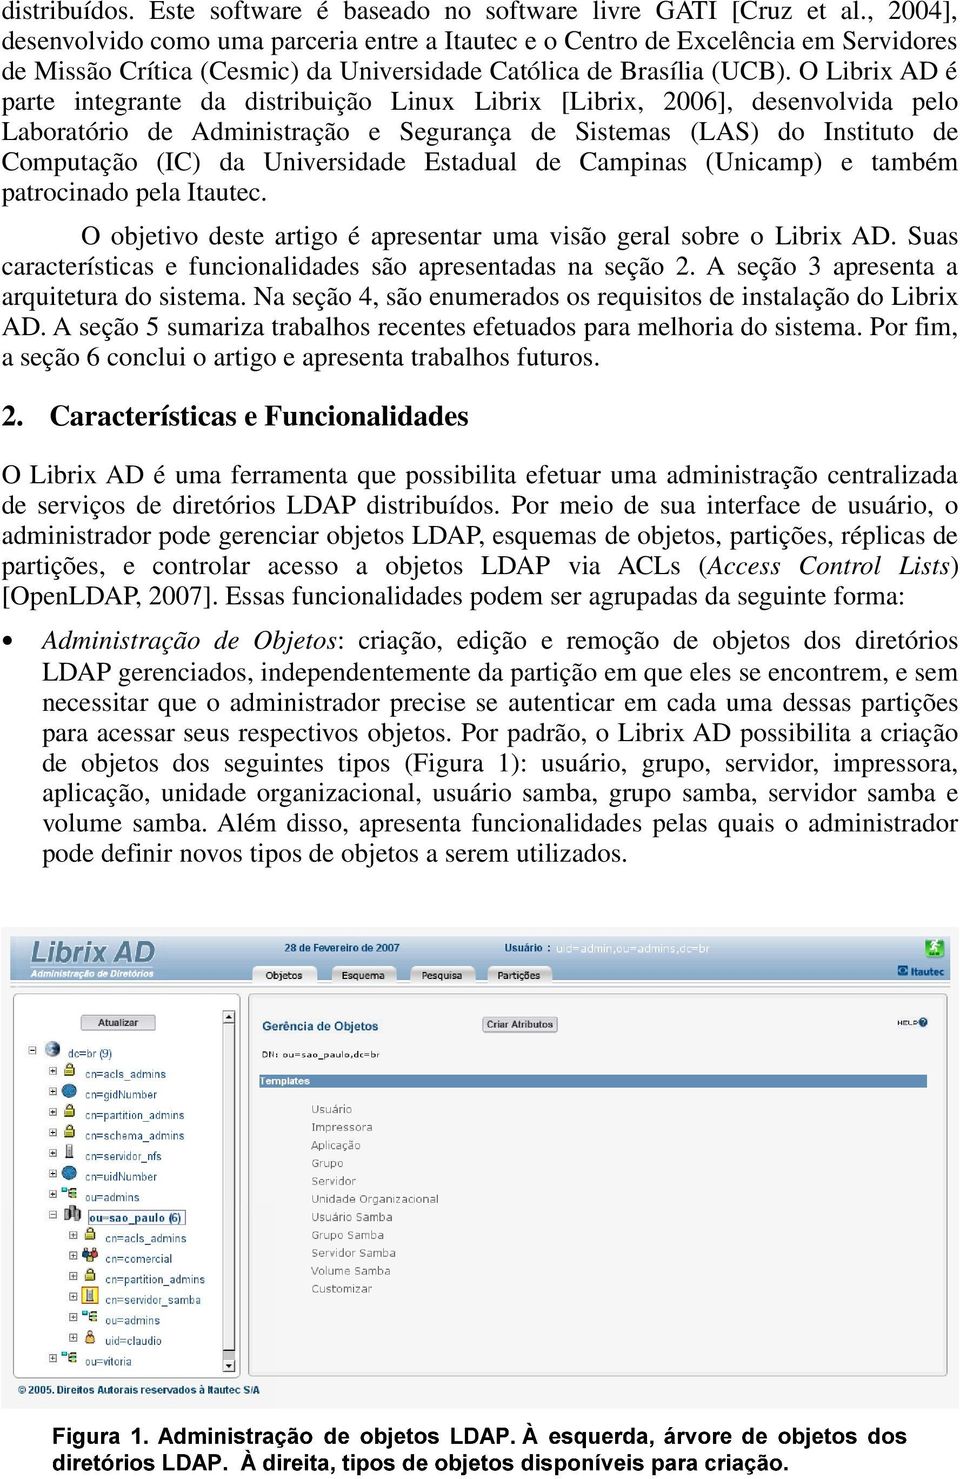 O Librix AD é parte integrante da distribuição Linux Librix [Librix, 2006], desenvolvida pelo Laboratório de Administração e Segurança de Sistemas (LAS) do Instituto de Computação (IC) da